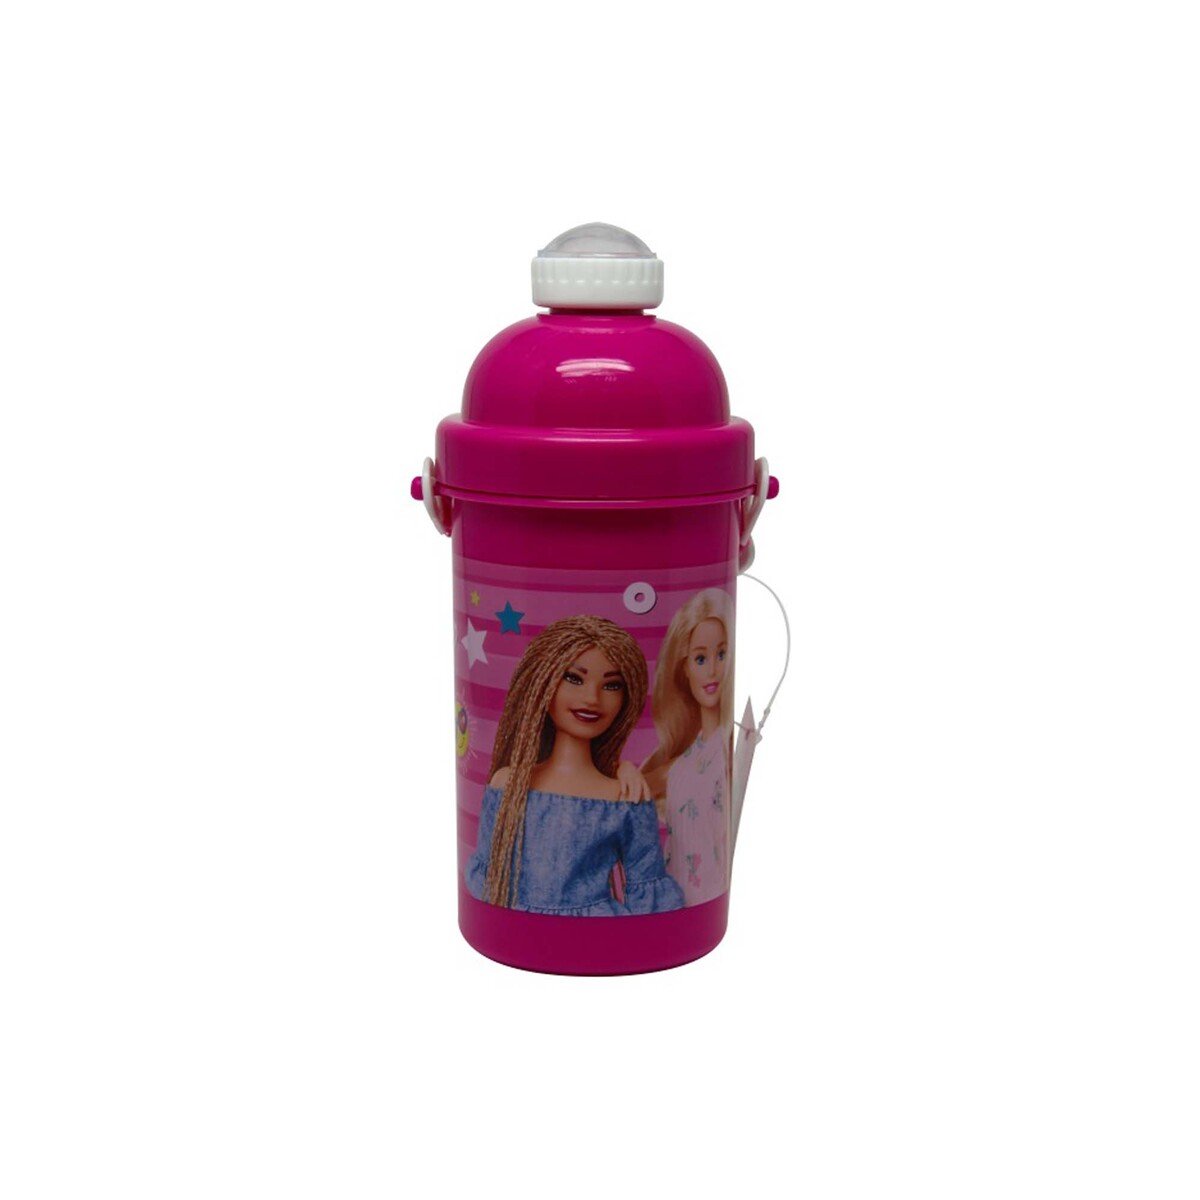 Barbie Water Bottle 31-0820